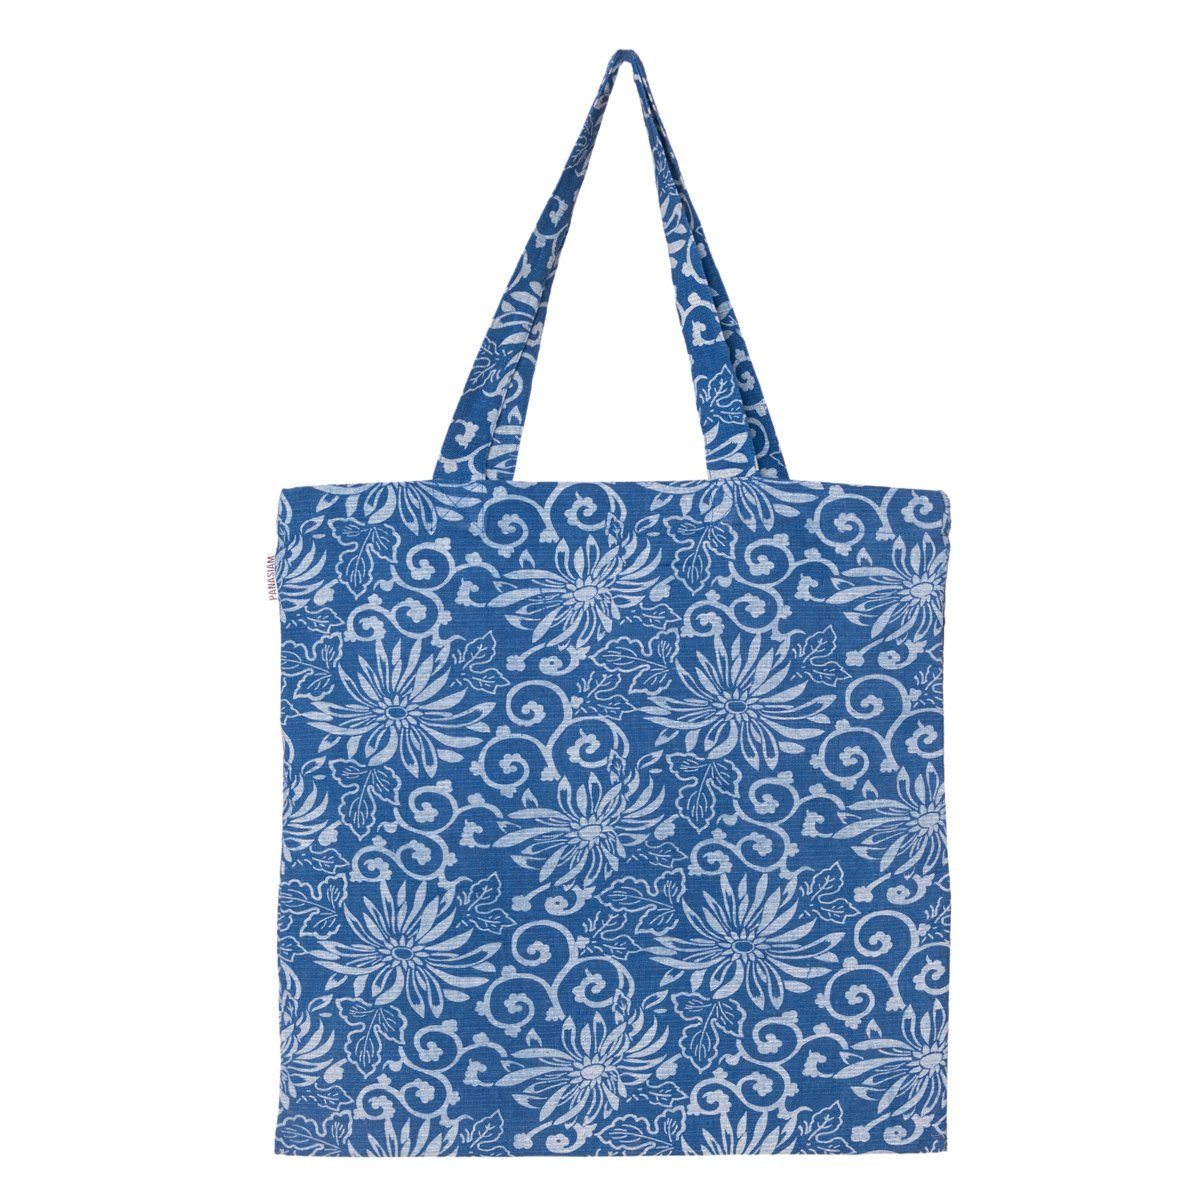 PANASIAM Beuteltasche Geometrix Baumwollbeutel auch oder mit japanischen traditionellen Schuhbeutel, Blue 100% Baumwolle Einkaufstasche flower als Jutebeutel aus Mustern